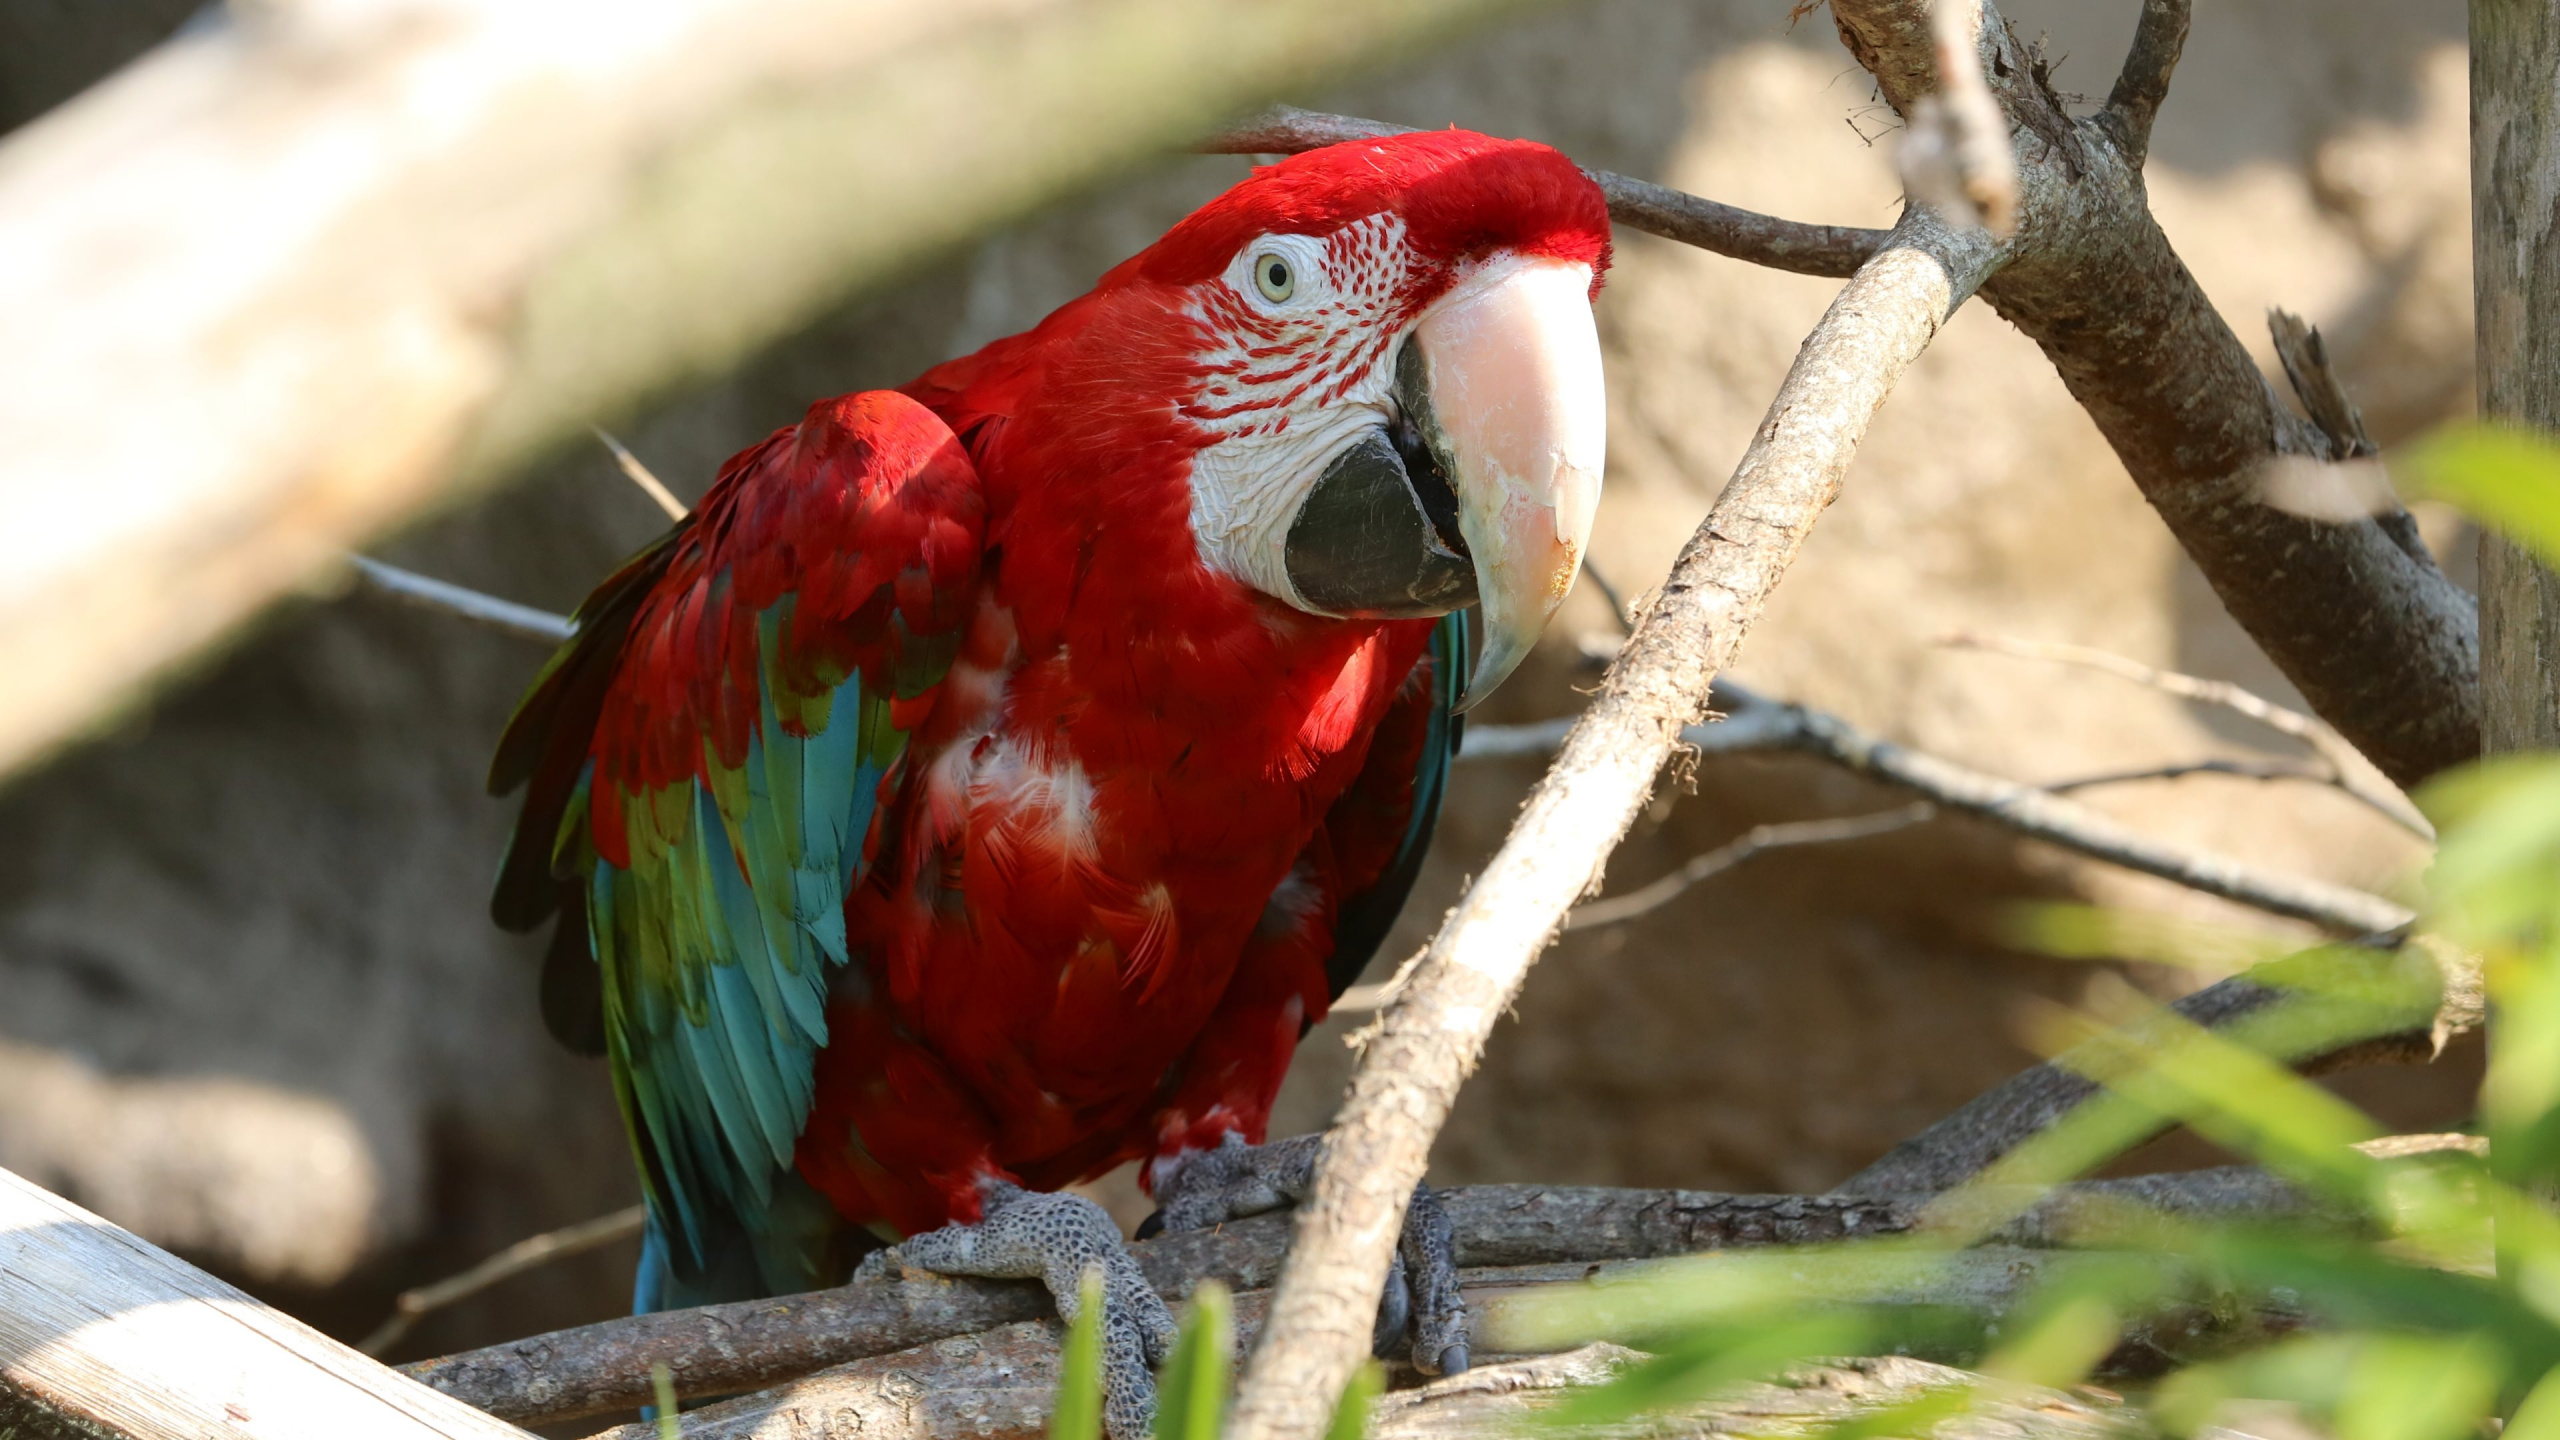 金刚鹦鹉, 猩红色的金刚鹦鹉, 鸟, 佩里科, 红色和绿色的金刚鹦鹉 壁纸 2560x1440 允许